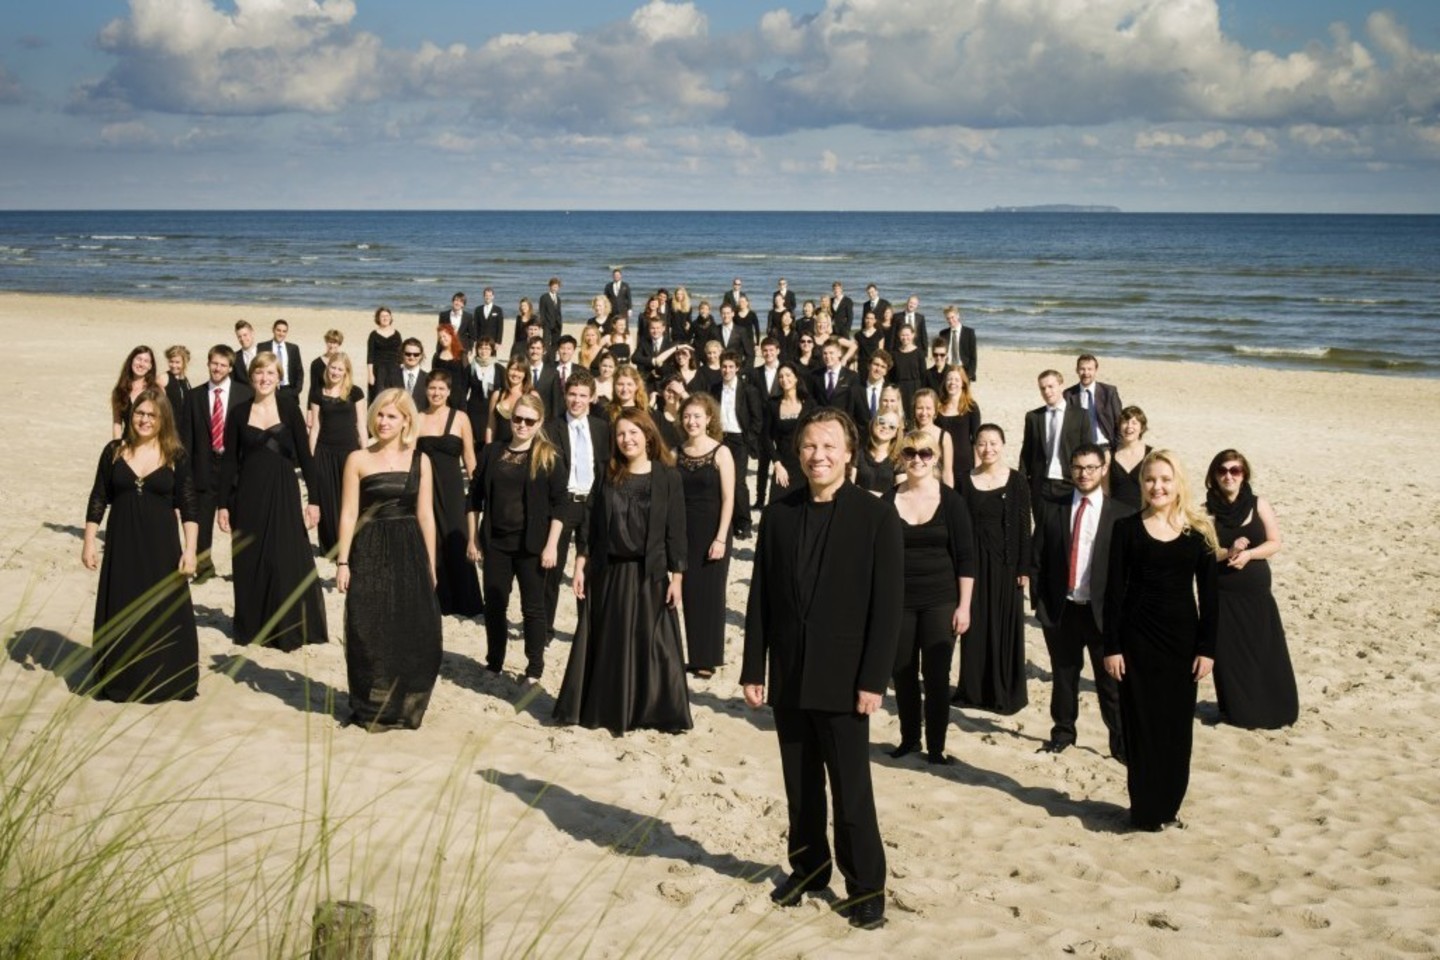 Baltijos jūros filharmonijos orkestras – tai naujas muzikos ir kultūros balsas.<br>Organizatorių nuotr.